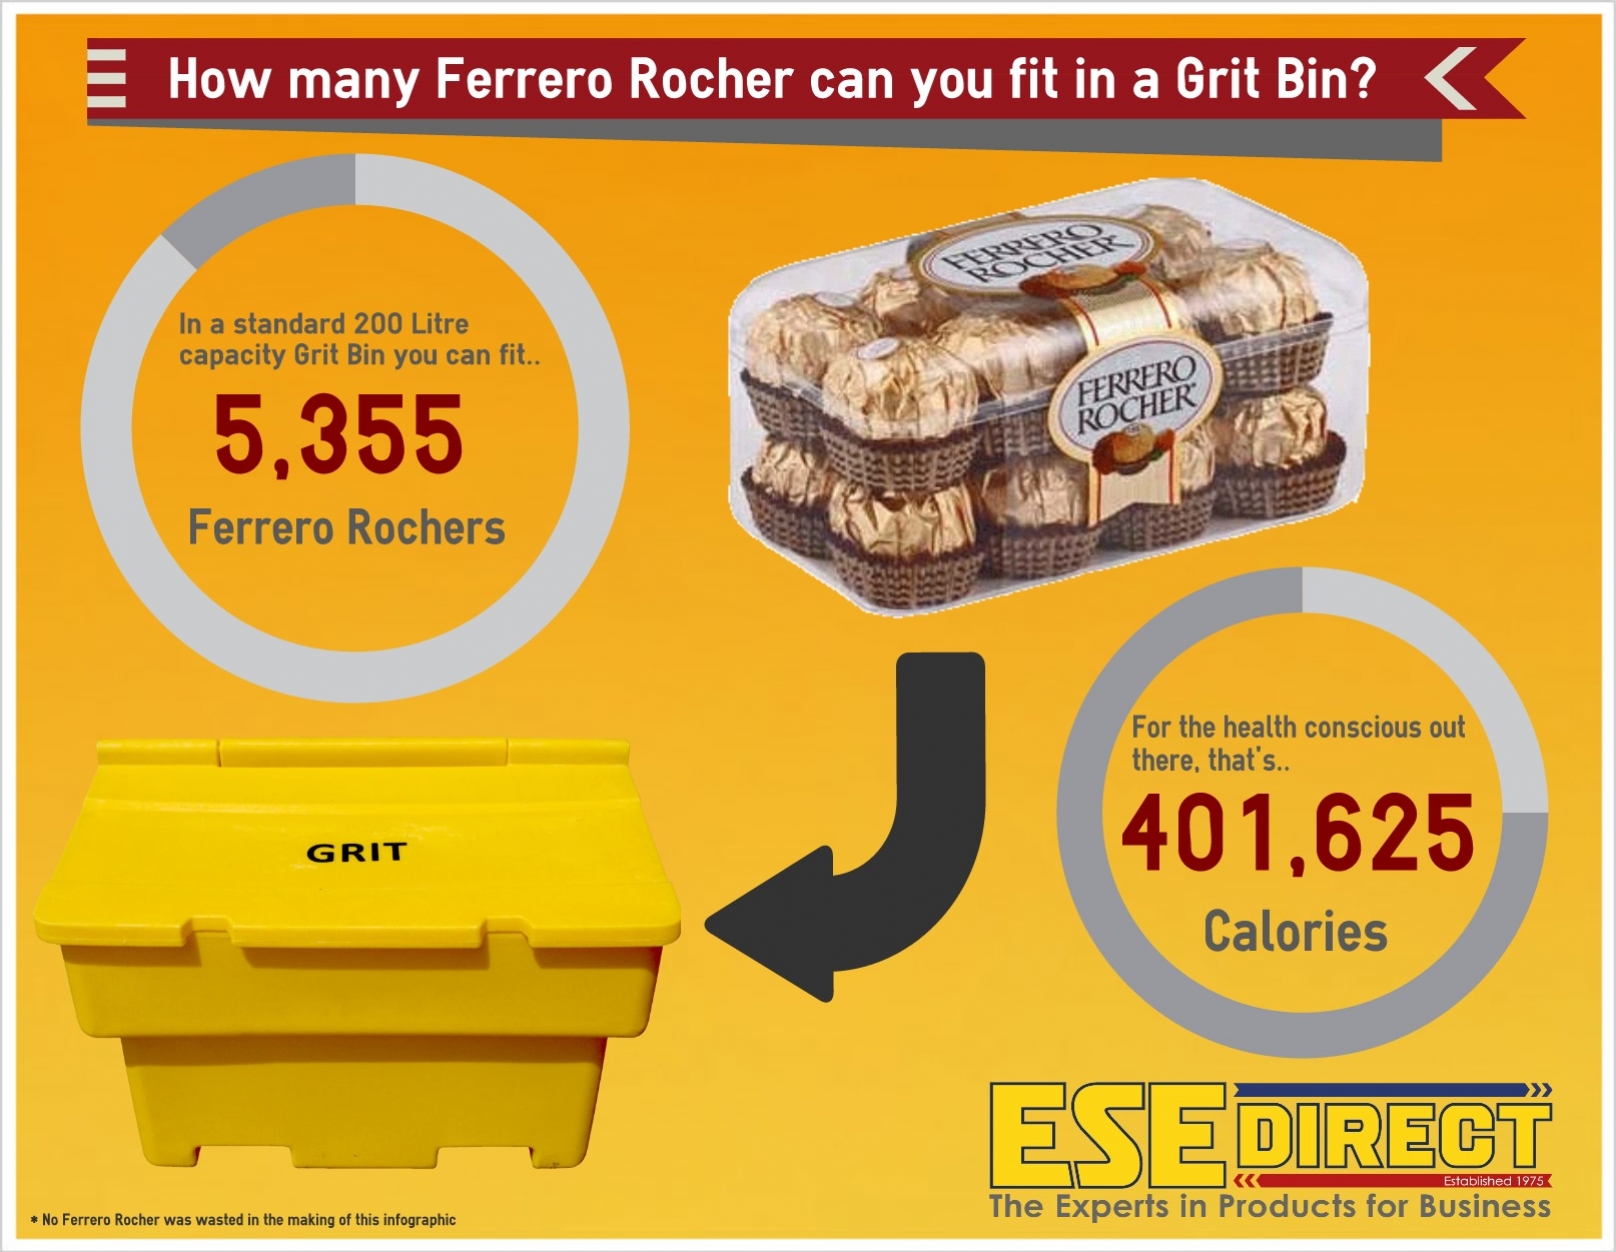 Ferrero Rocher in a grit bin